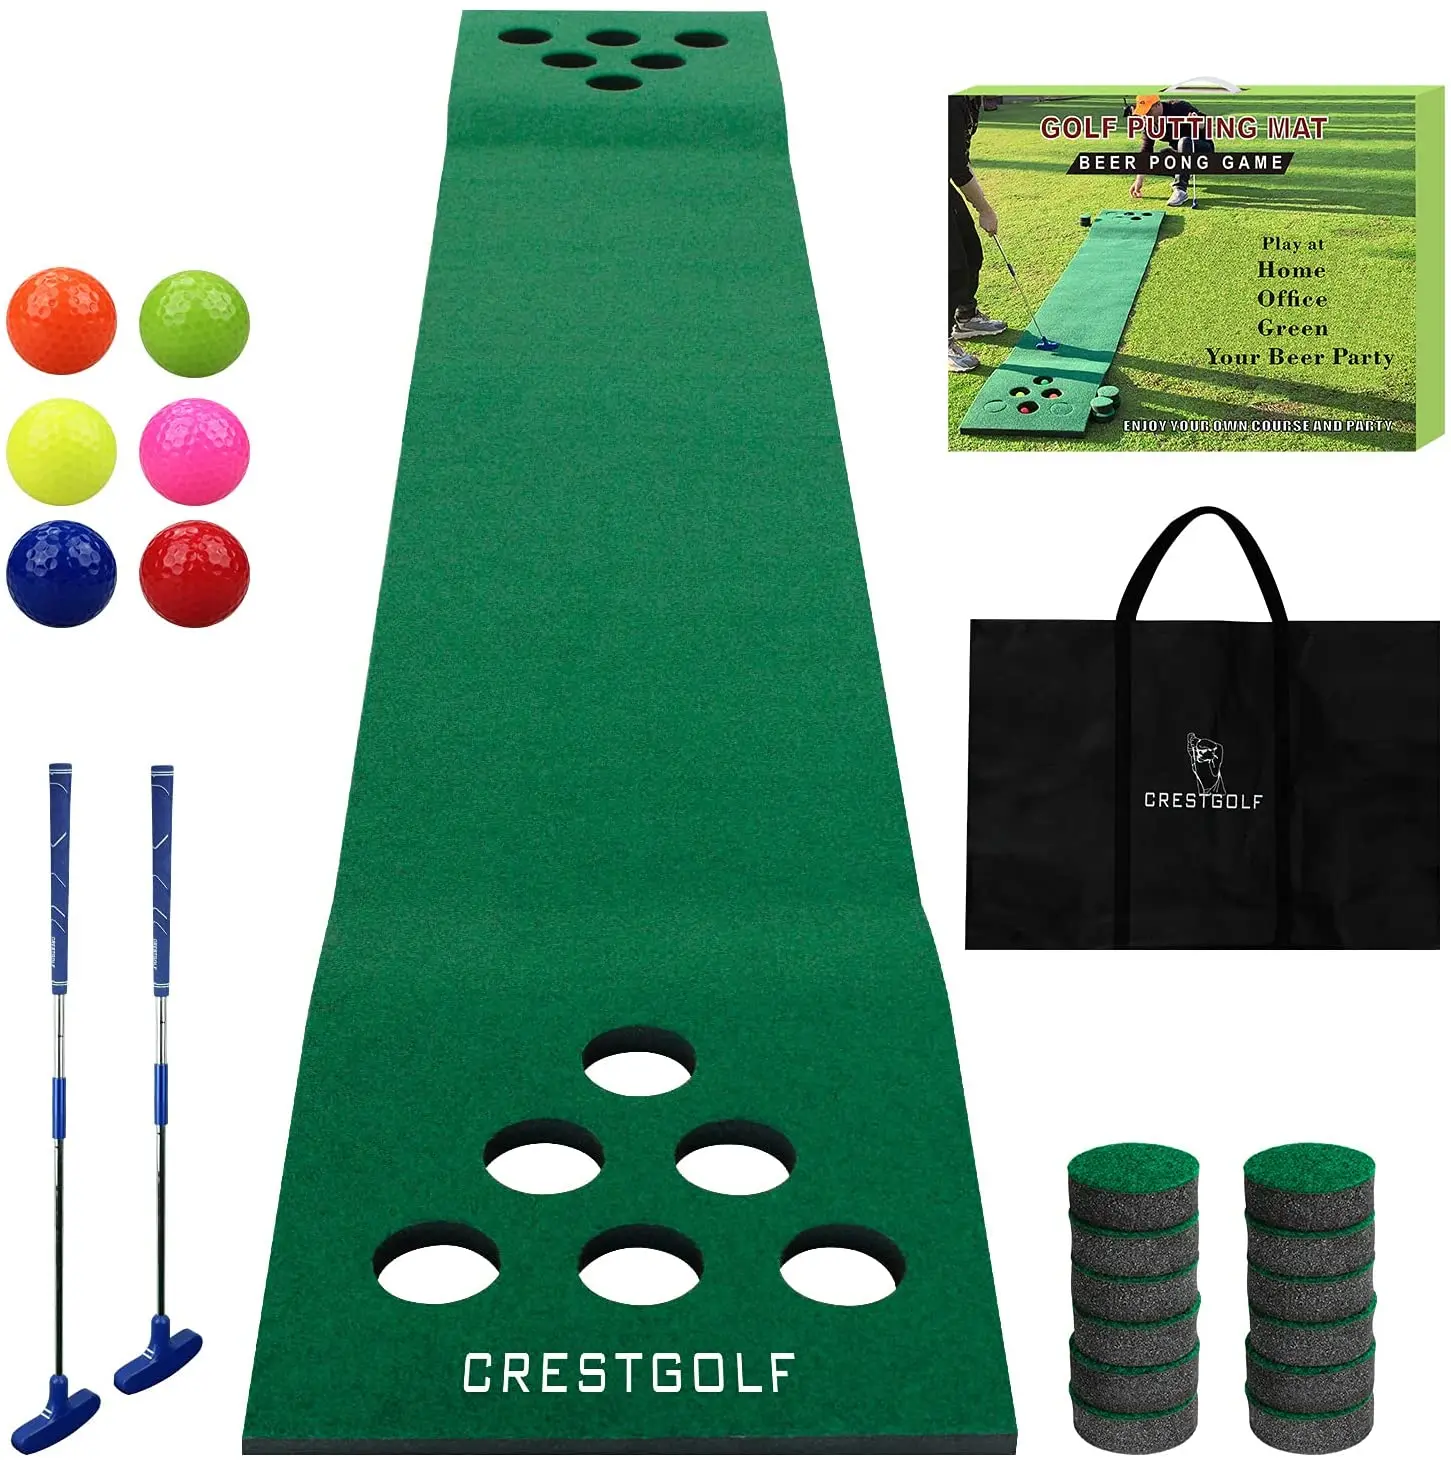 Коврик для игры в гольф и понг, набор зеленых ковриков для домашнего использования, тренировочное оборудование для игры в гольф, подходит дл...